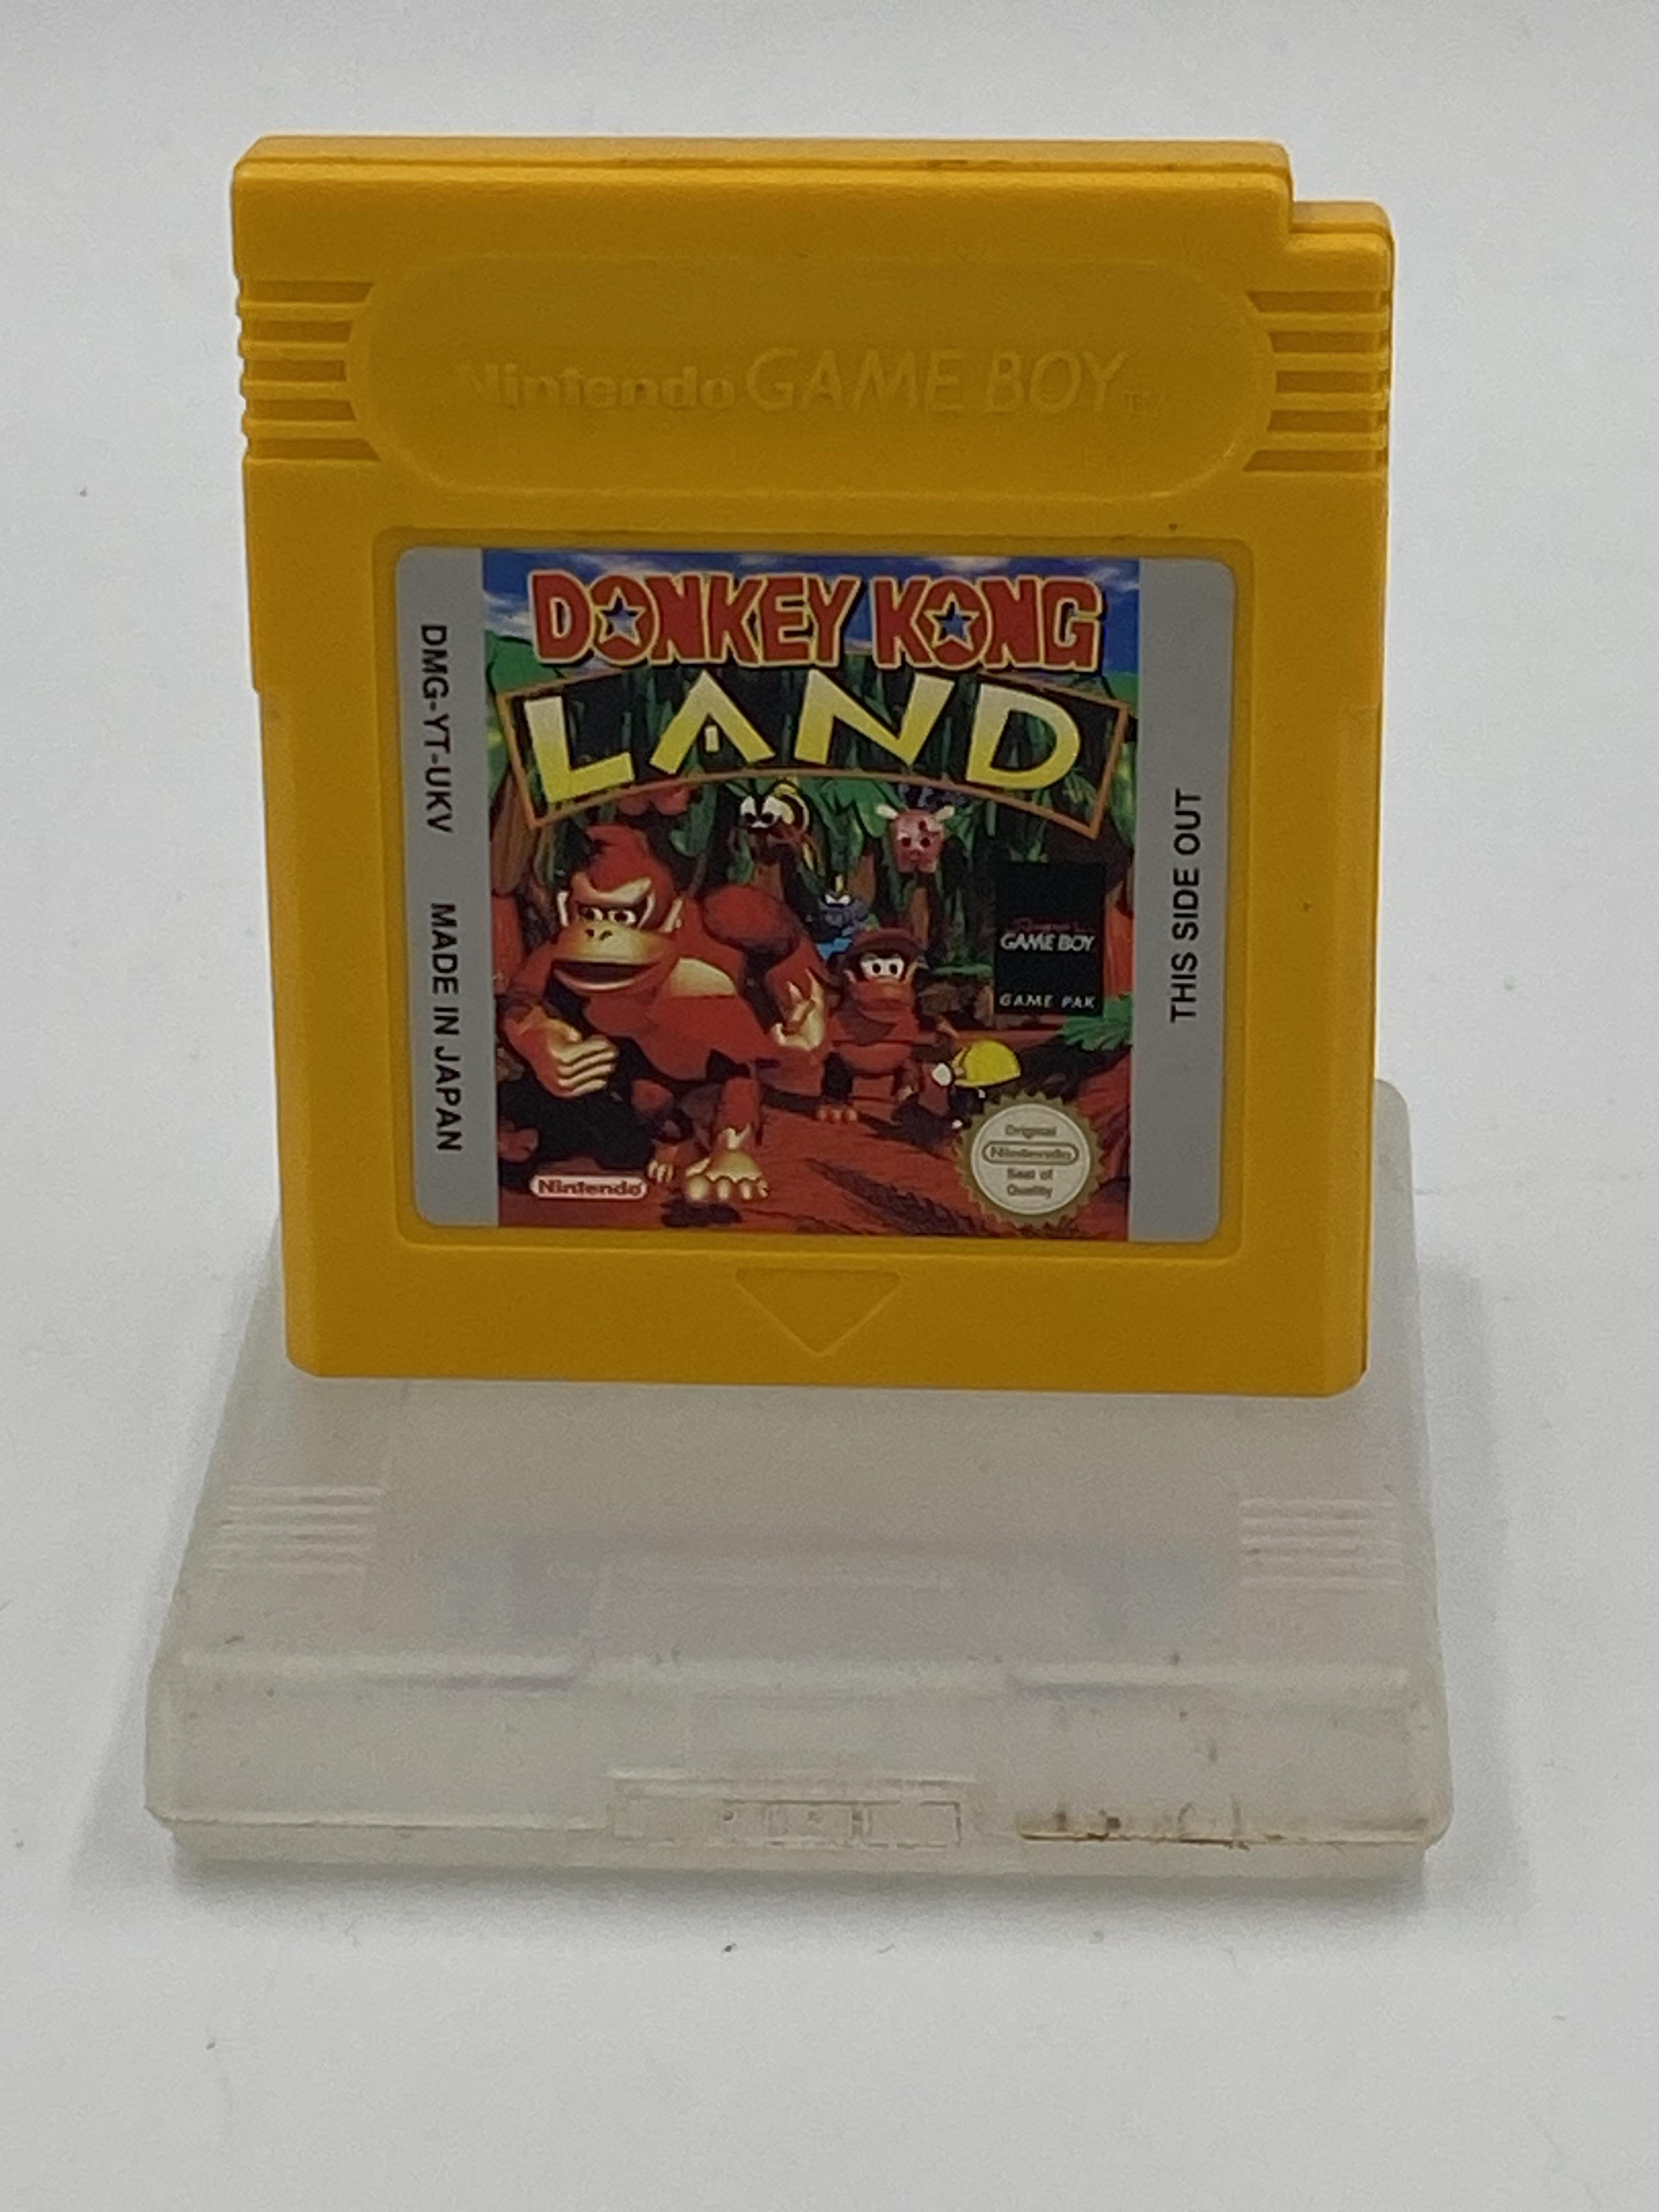 Nintendo Game Boy Donkey Kong Land